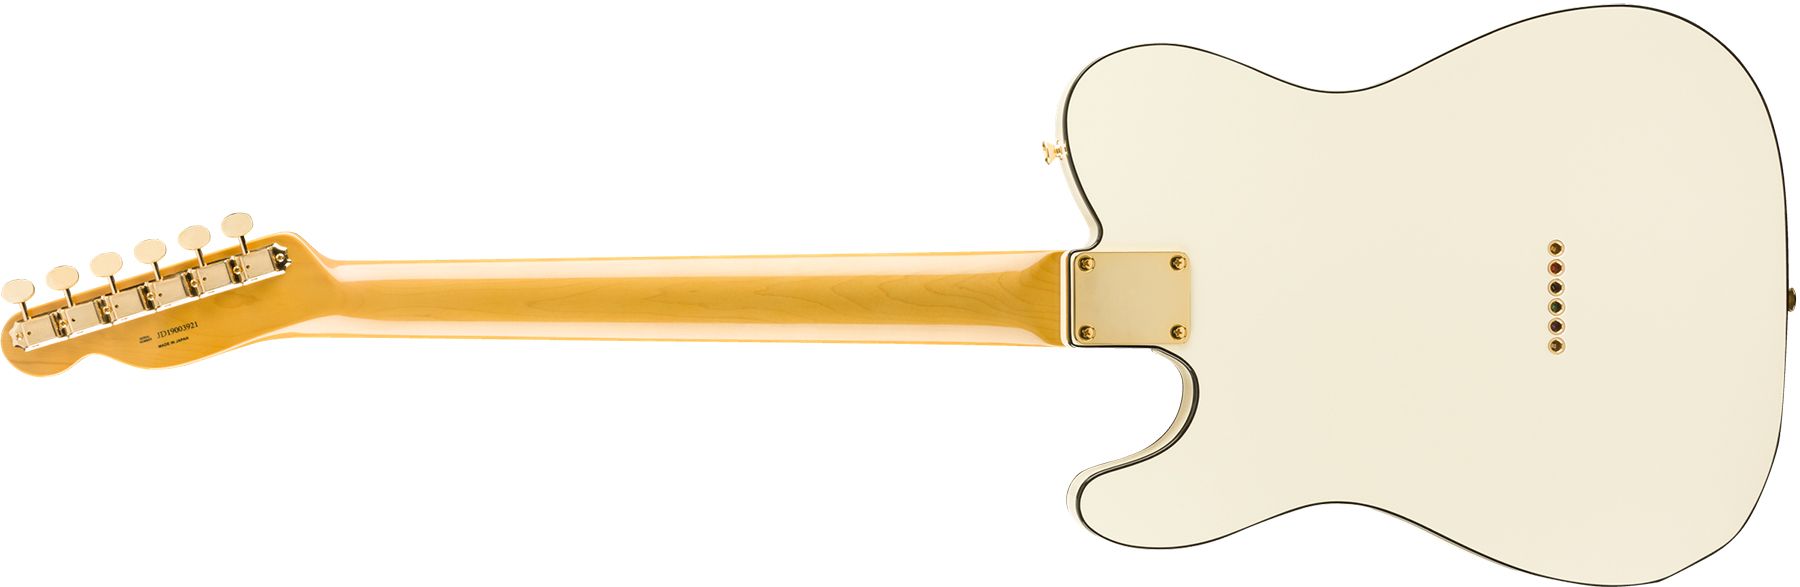 Fender Tele Daybreak Ltd 2019 Japon Gh Rw - Olympic White - Guitare Électrique Forme Tel - Variation 1